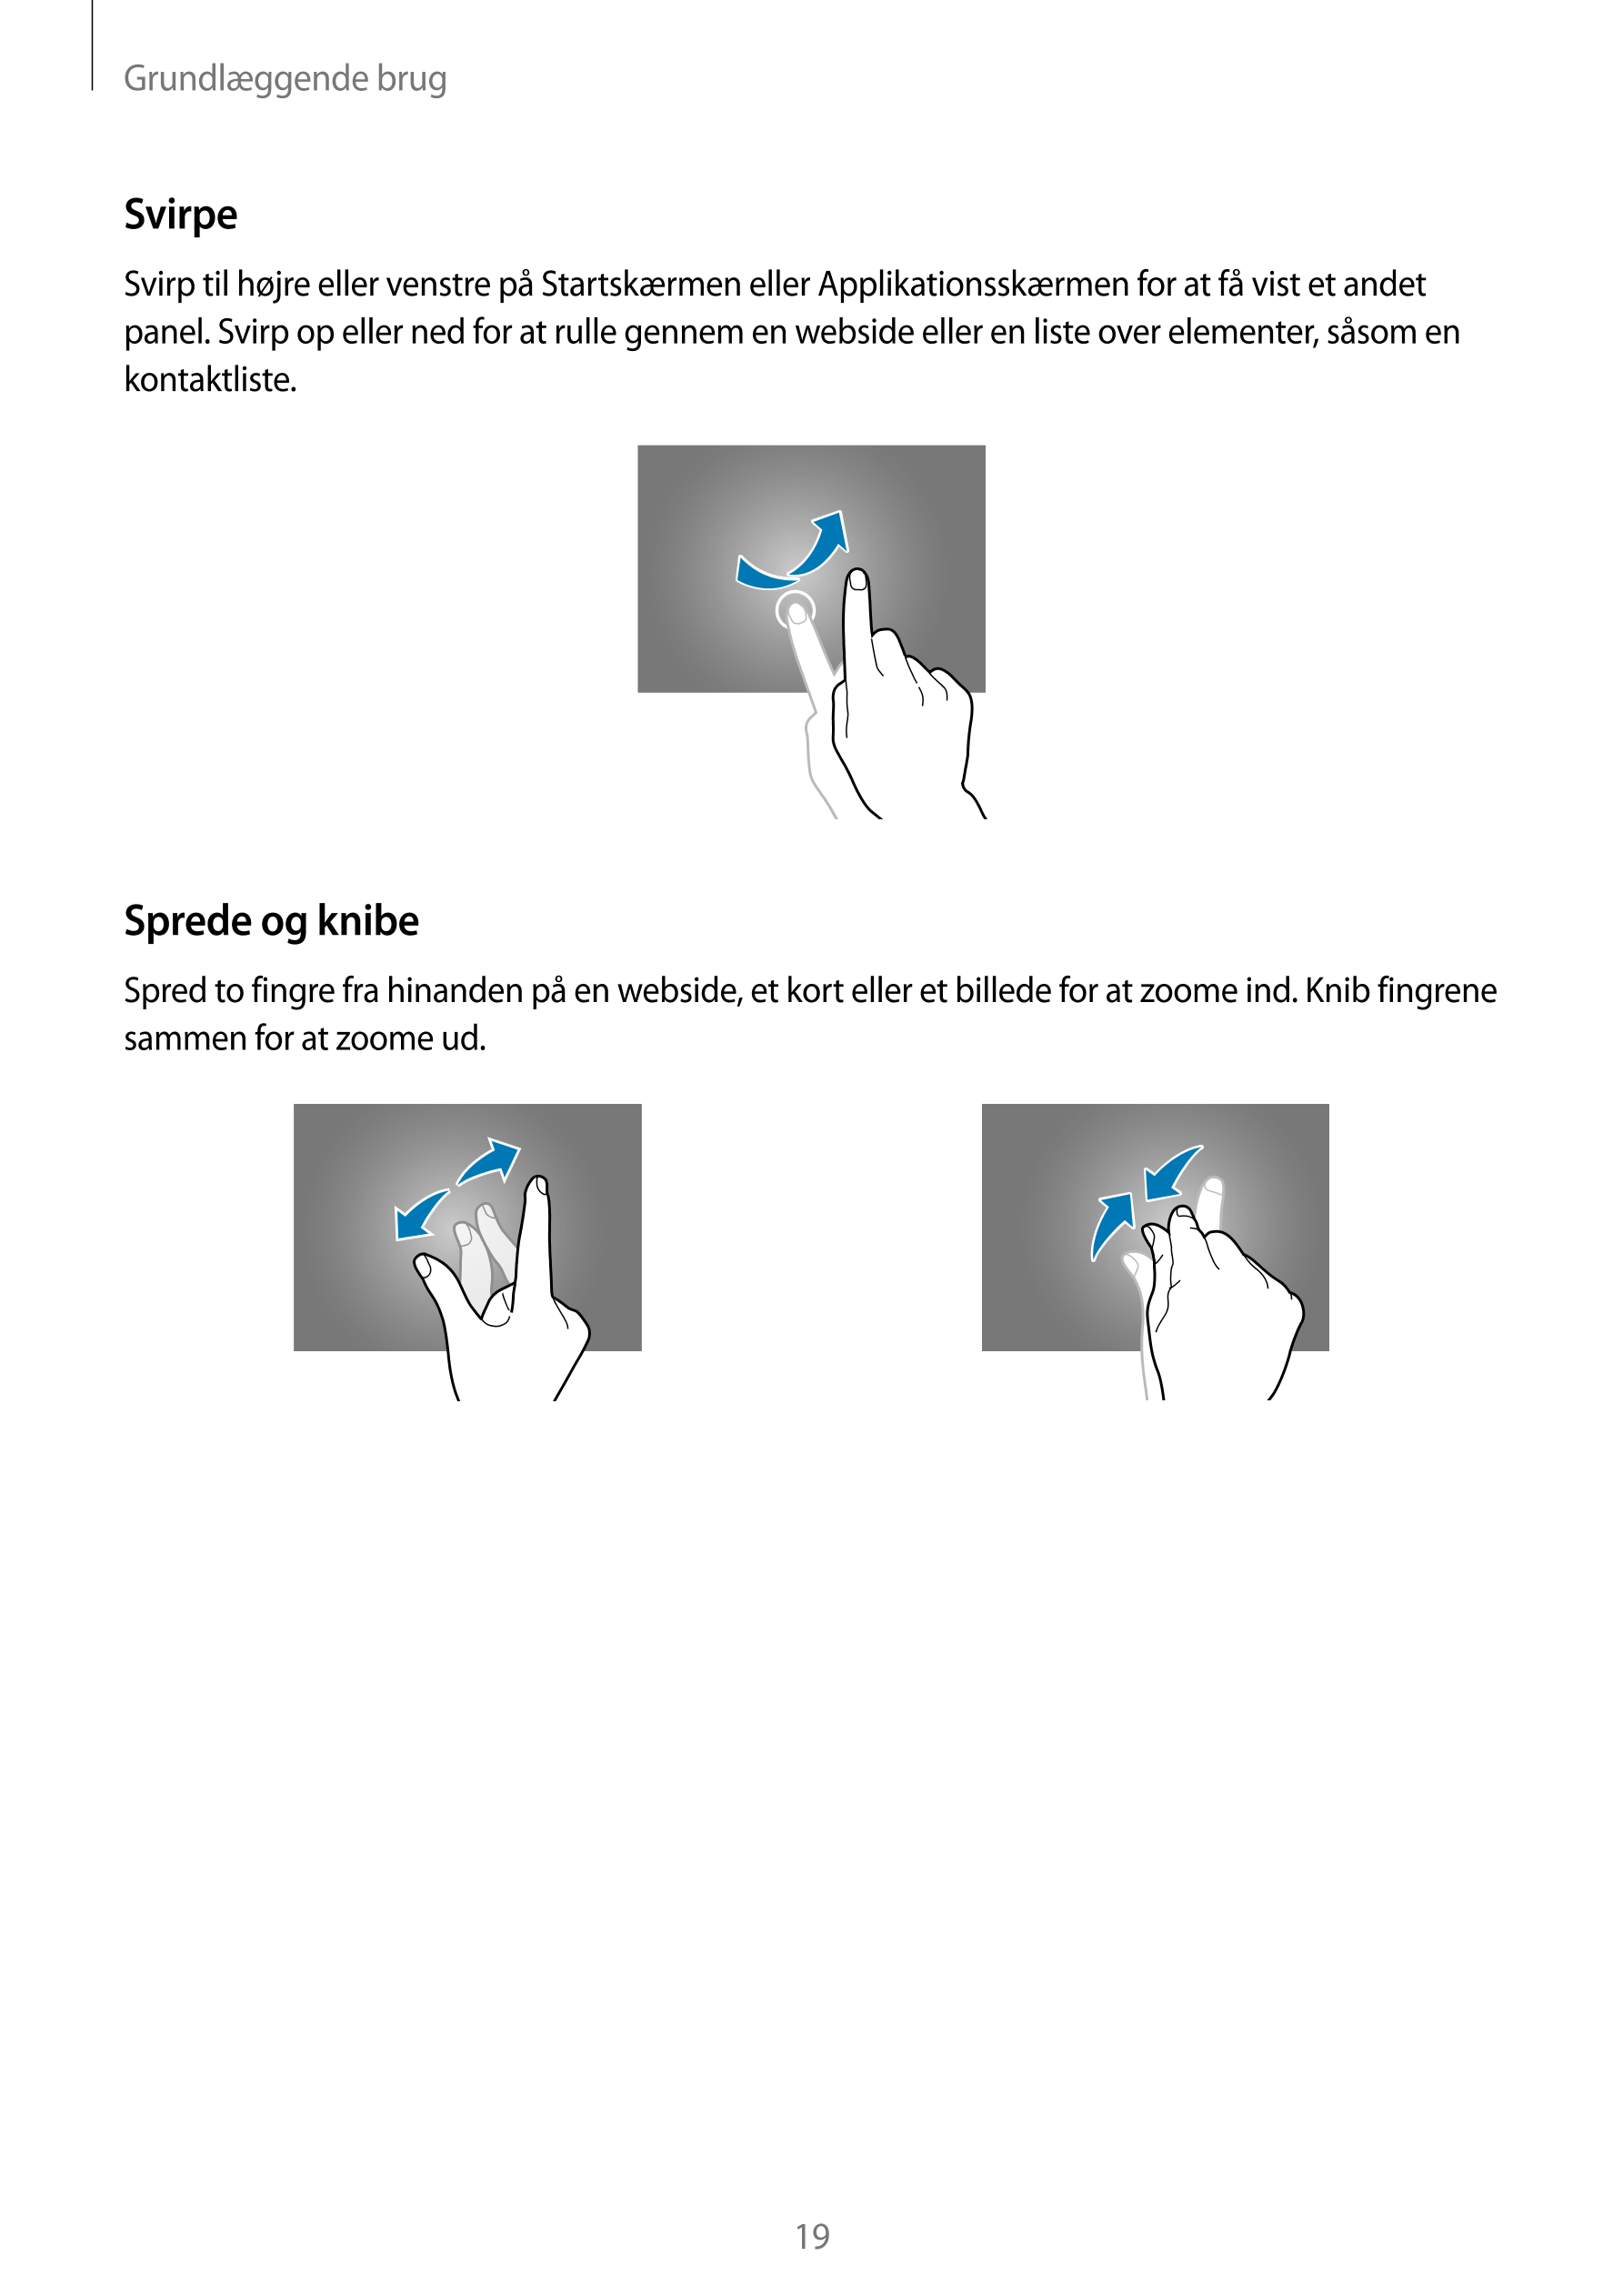 Grundlæggende brug
Svirpe
Svirp til højre eller venstre på Startskærmen eller Applikationsskærmen for at få vist et andet 
panel